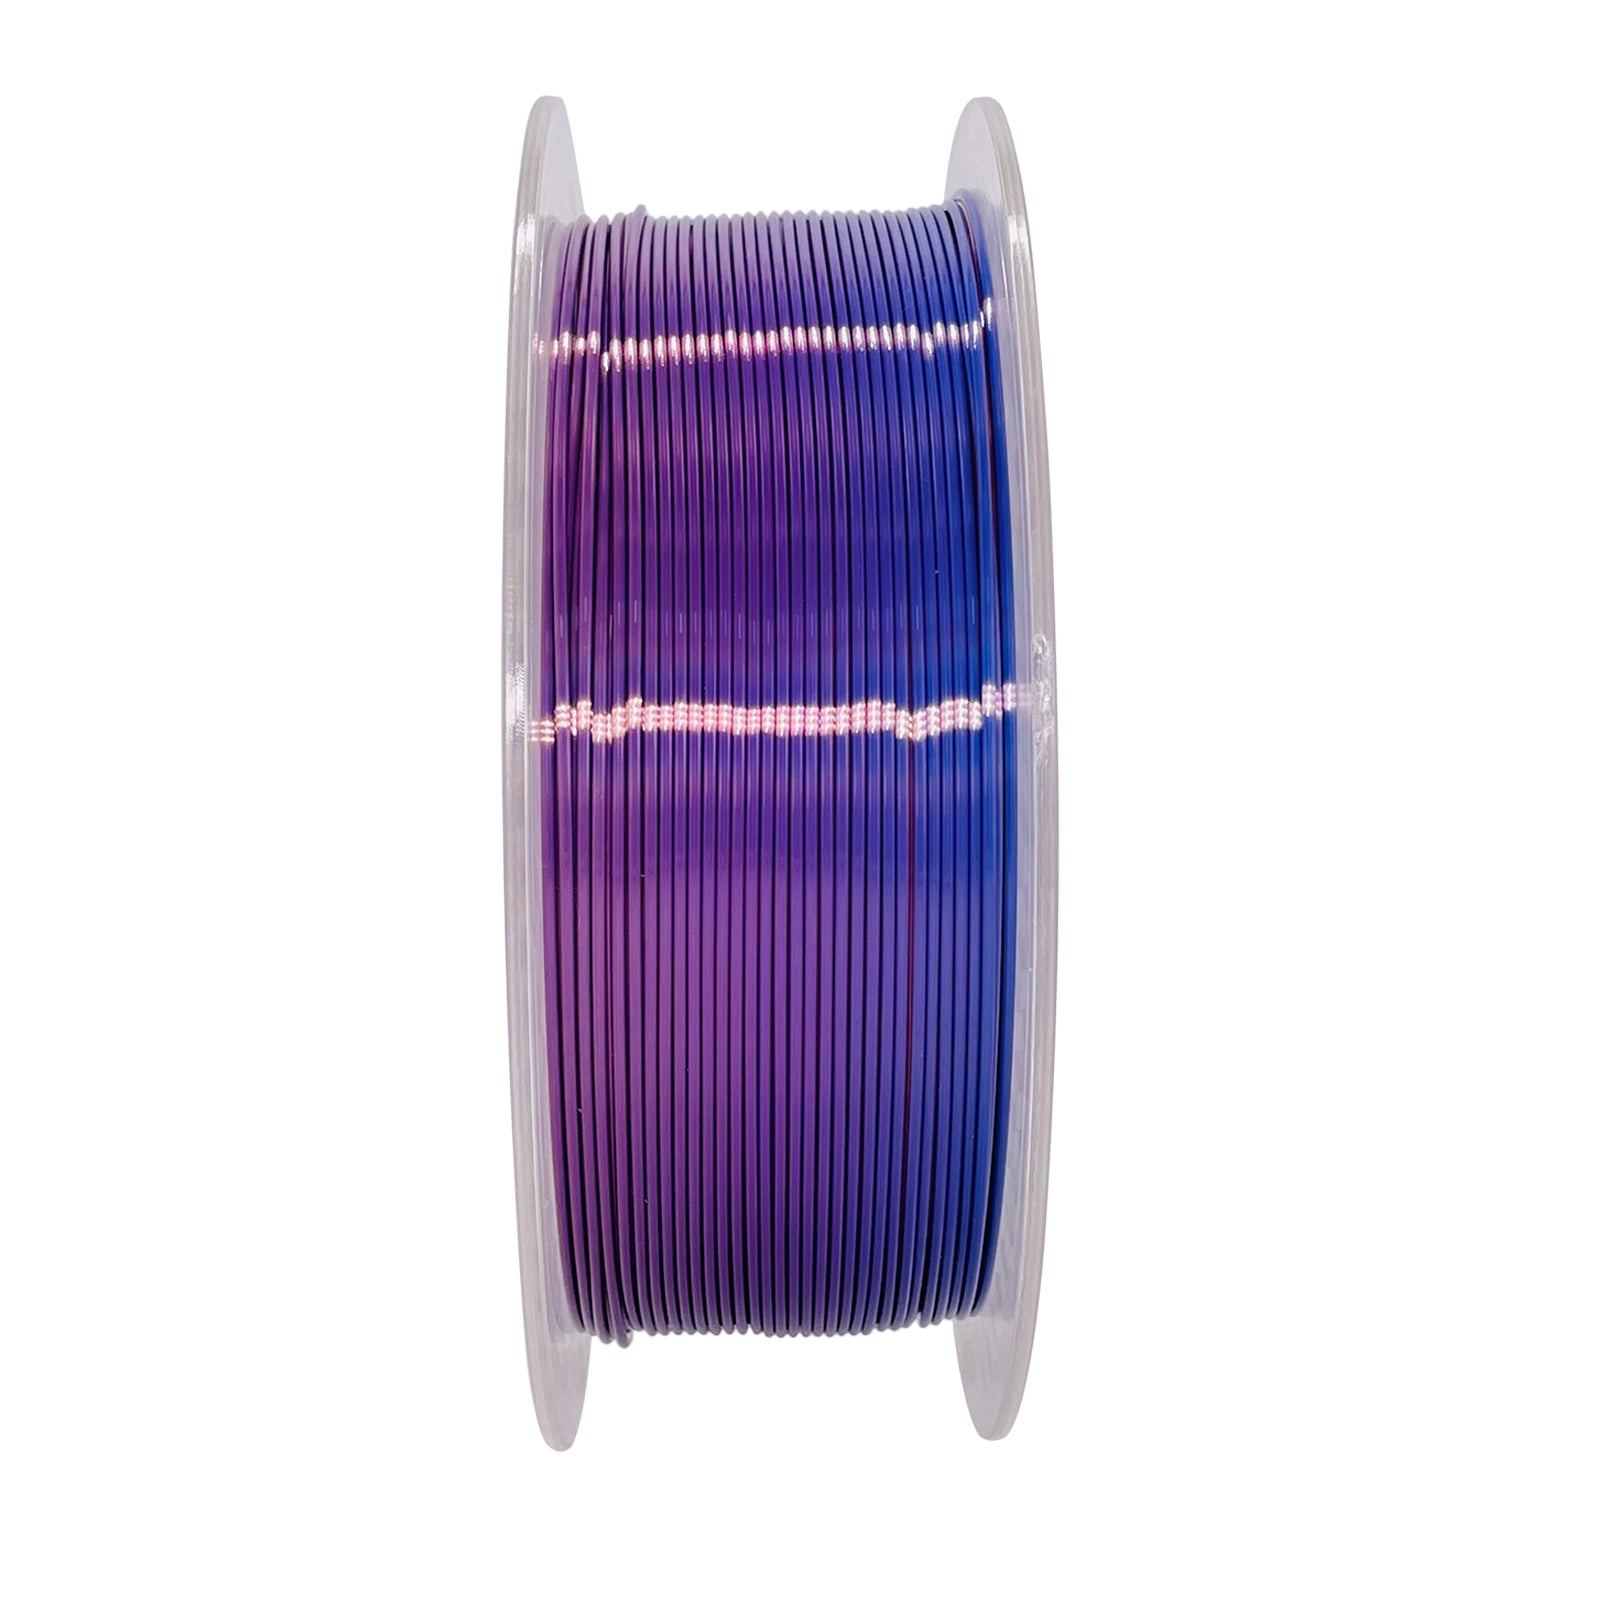 Rainbow-Silk PLA 1.75 mm 1 kg